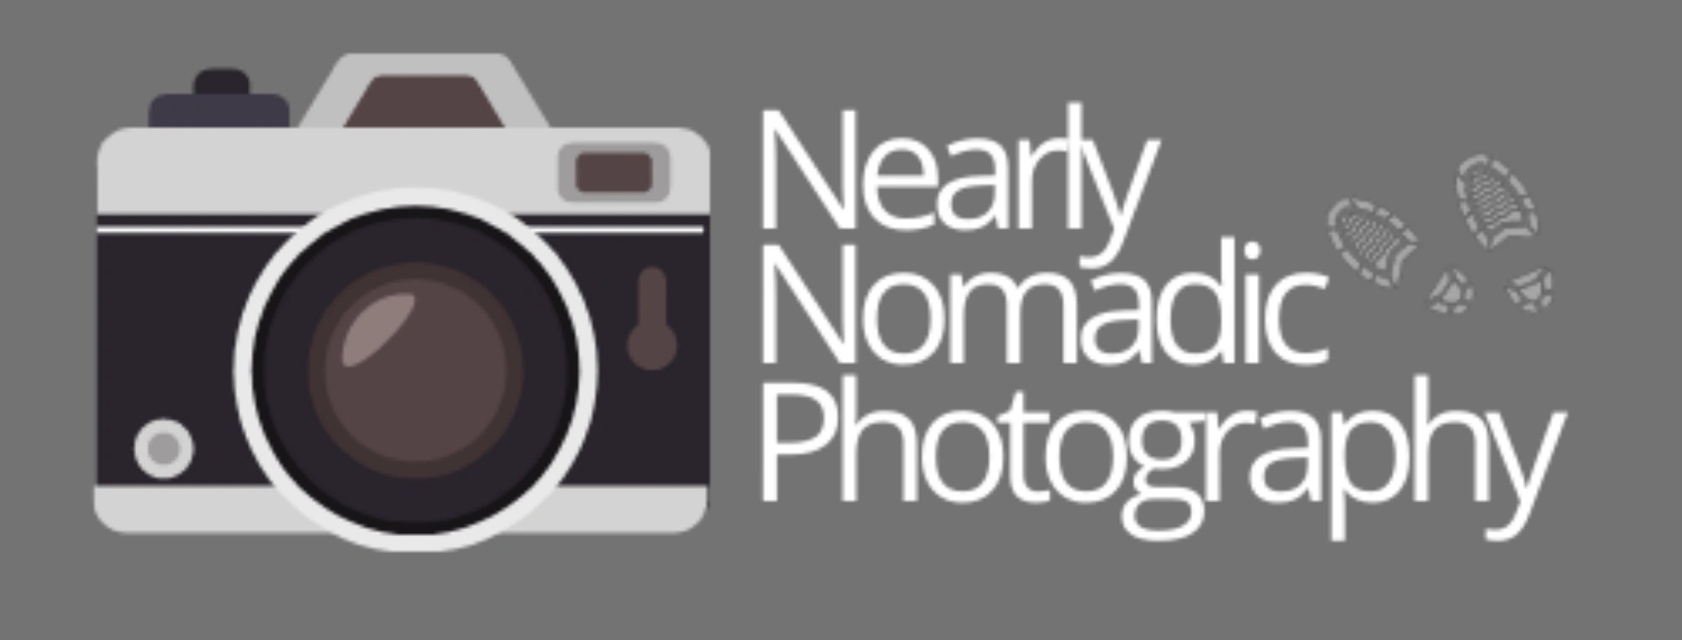 Nearly Nomadic Photography